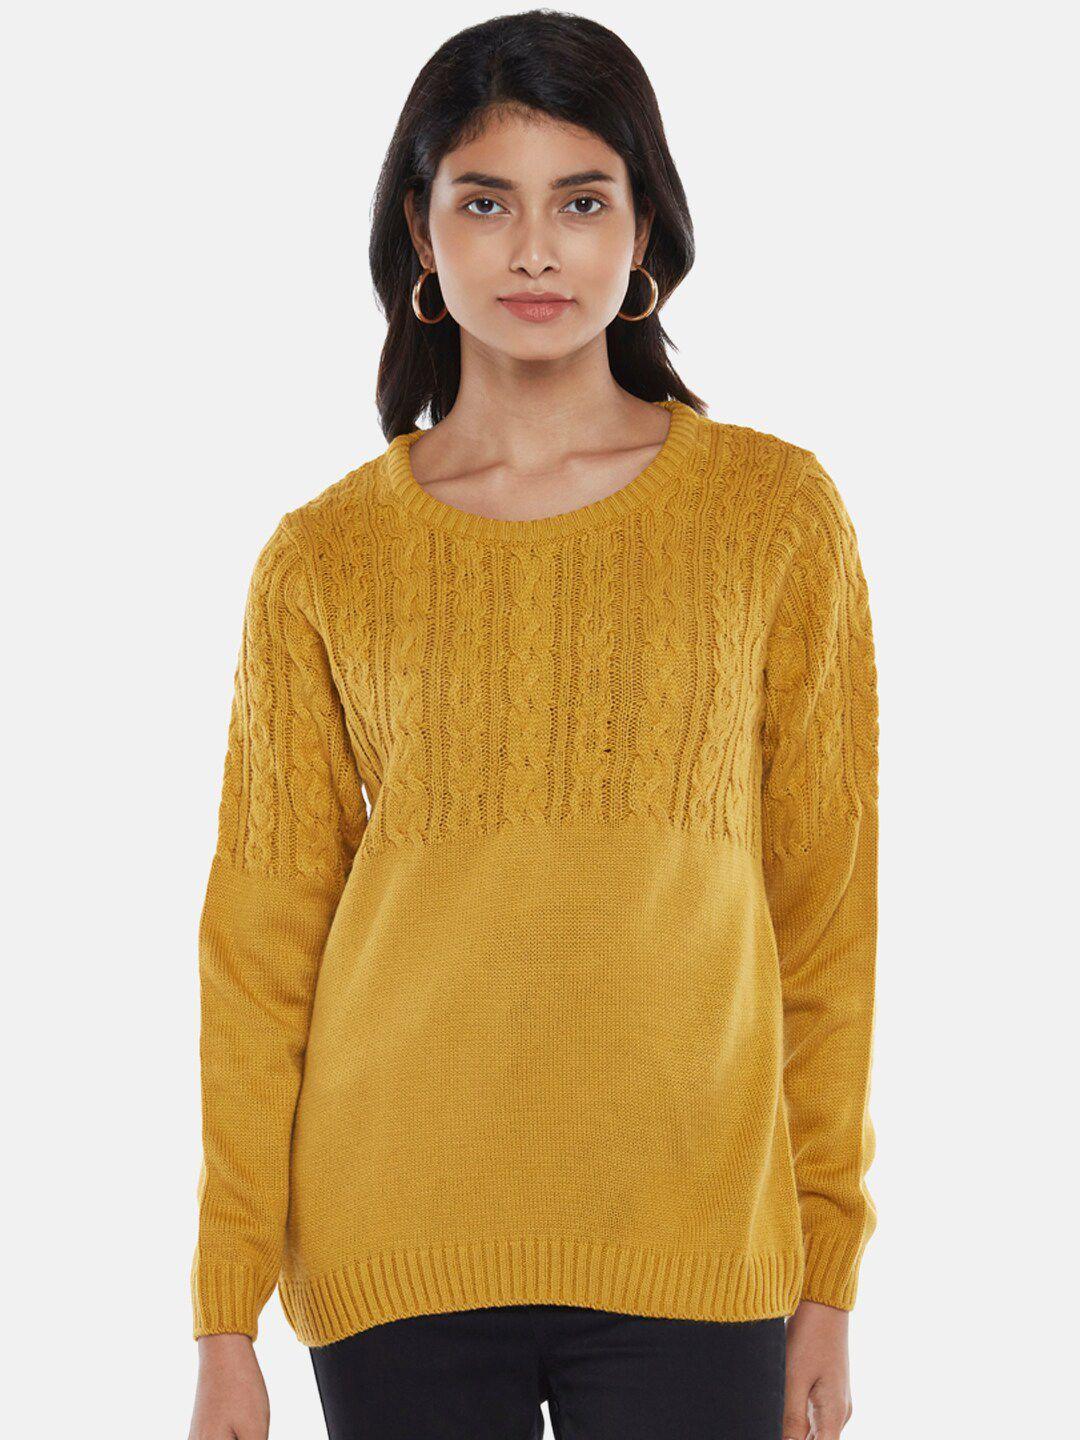 honey by pantaloons women mustard pullover